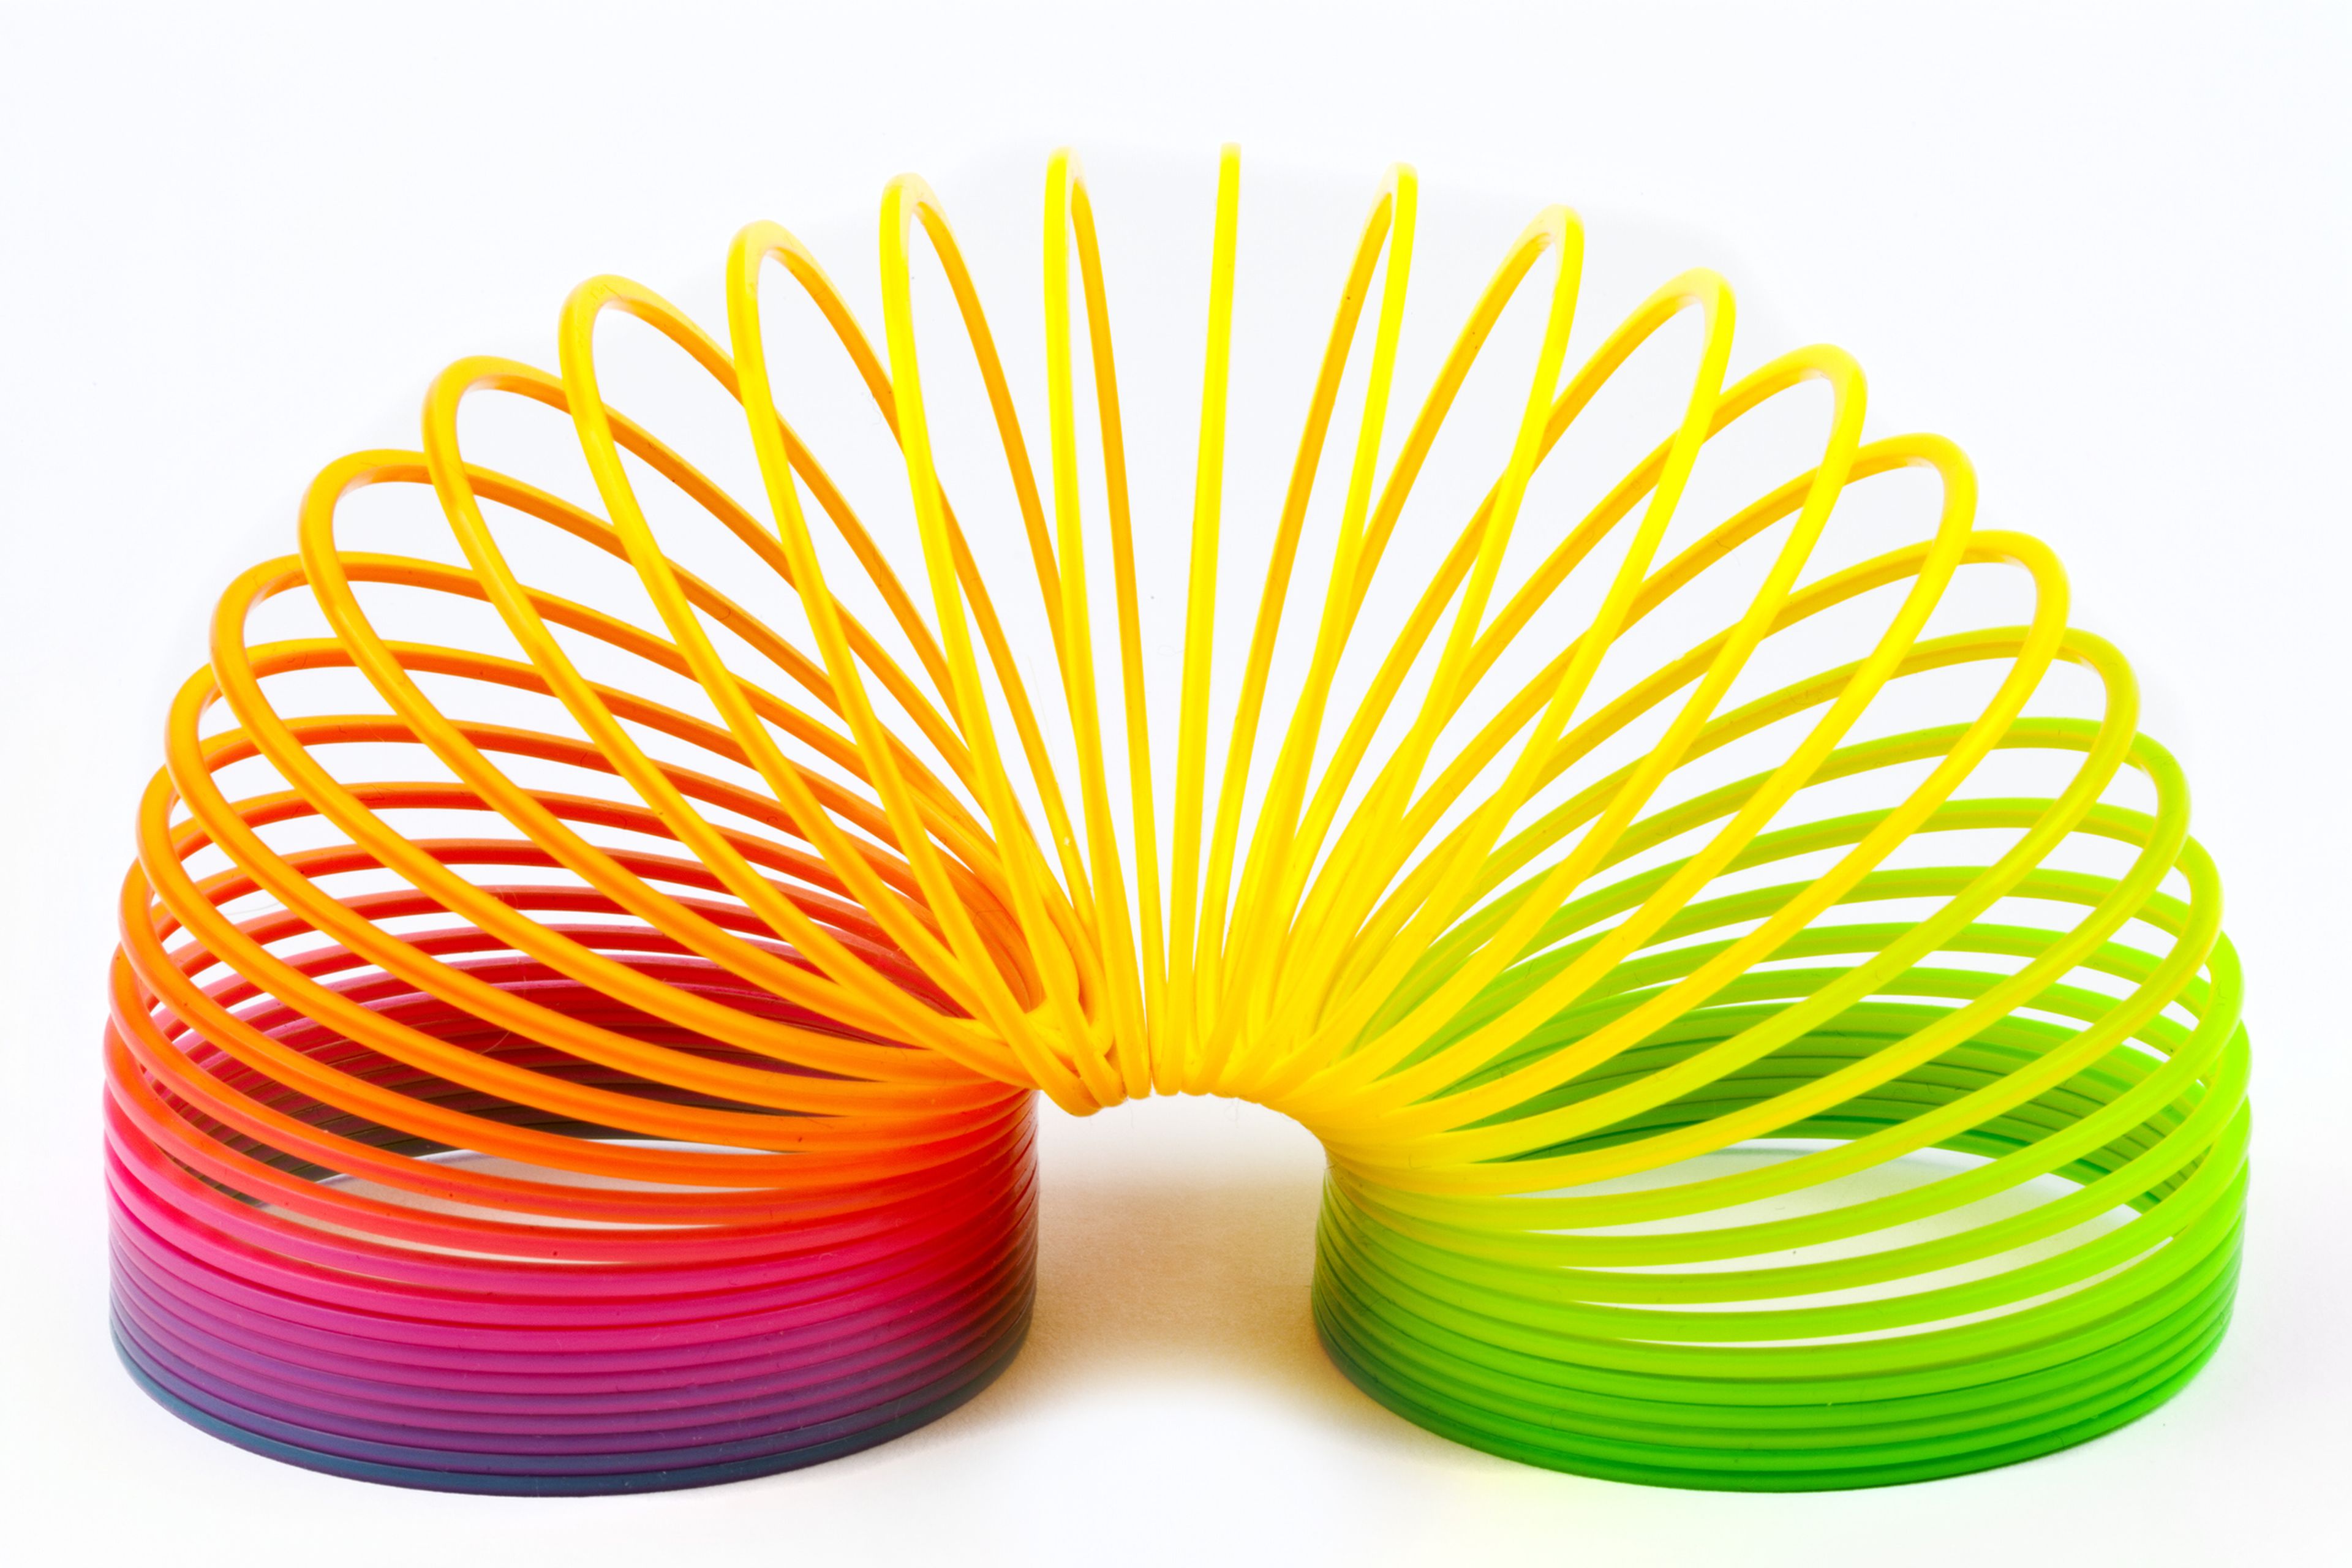 Historia del muelle Slinky, el juguete millonario que nació por accidente